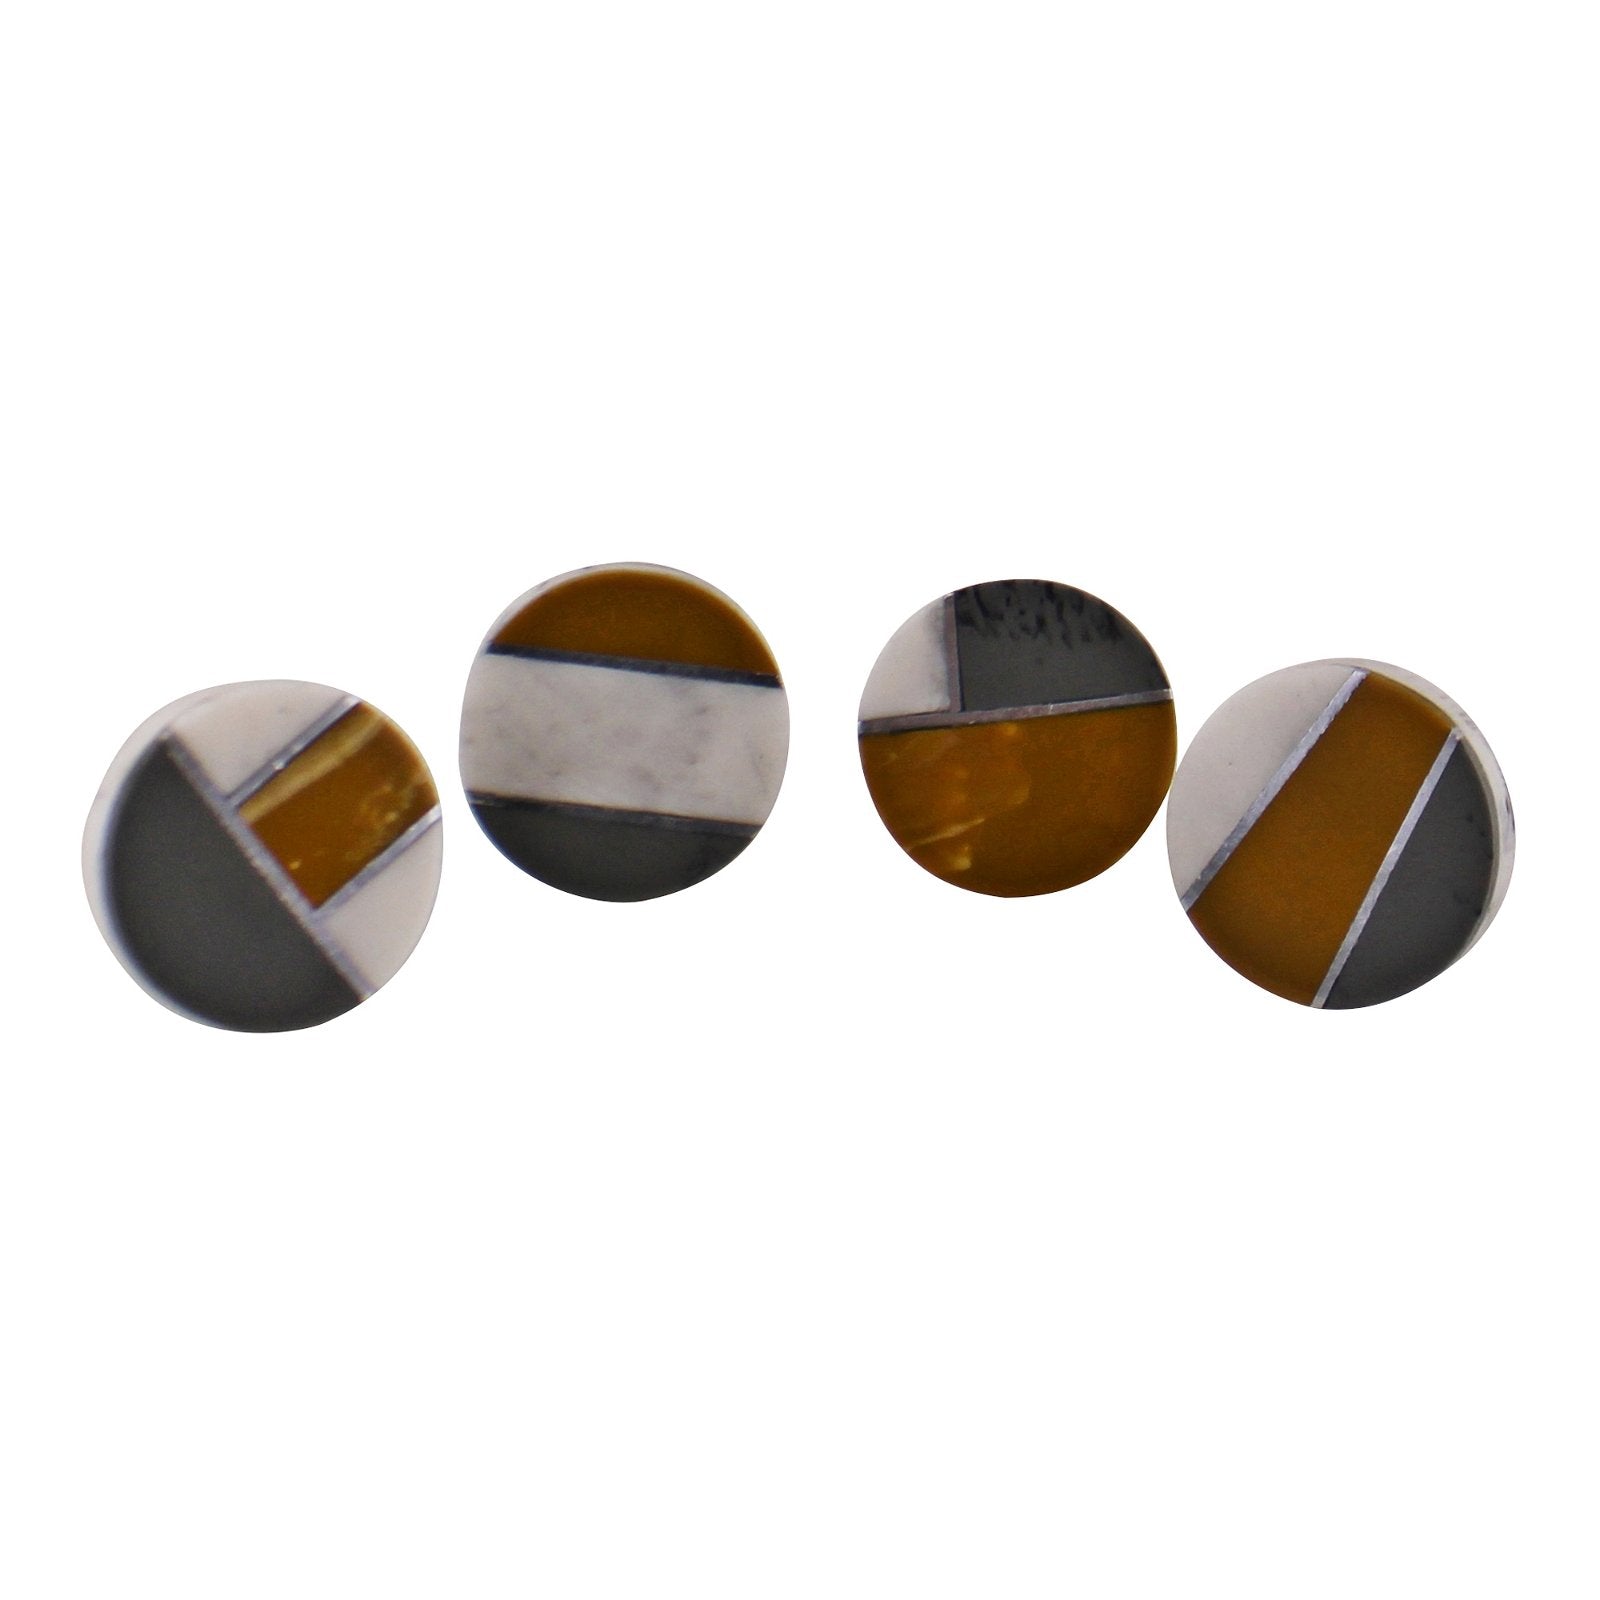 Set of 4 Round Abstract Design Resin Doorknobs